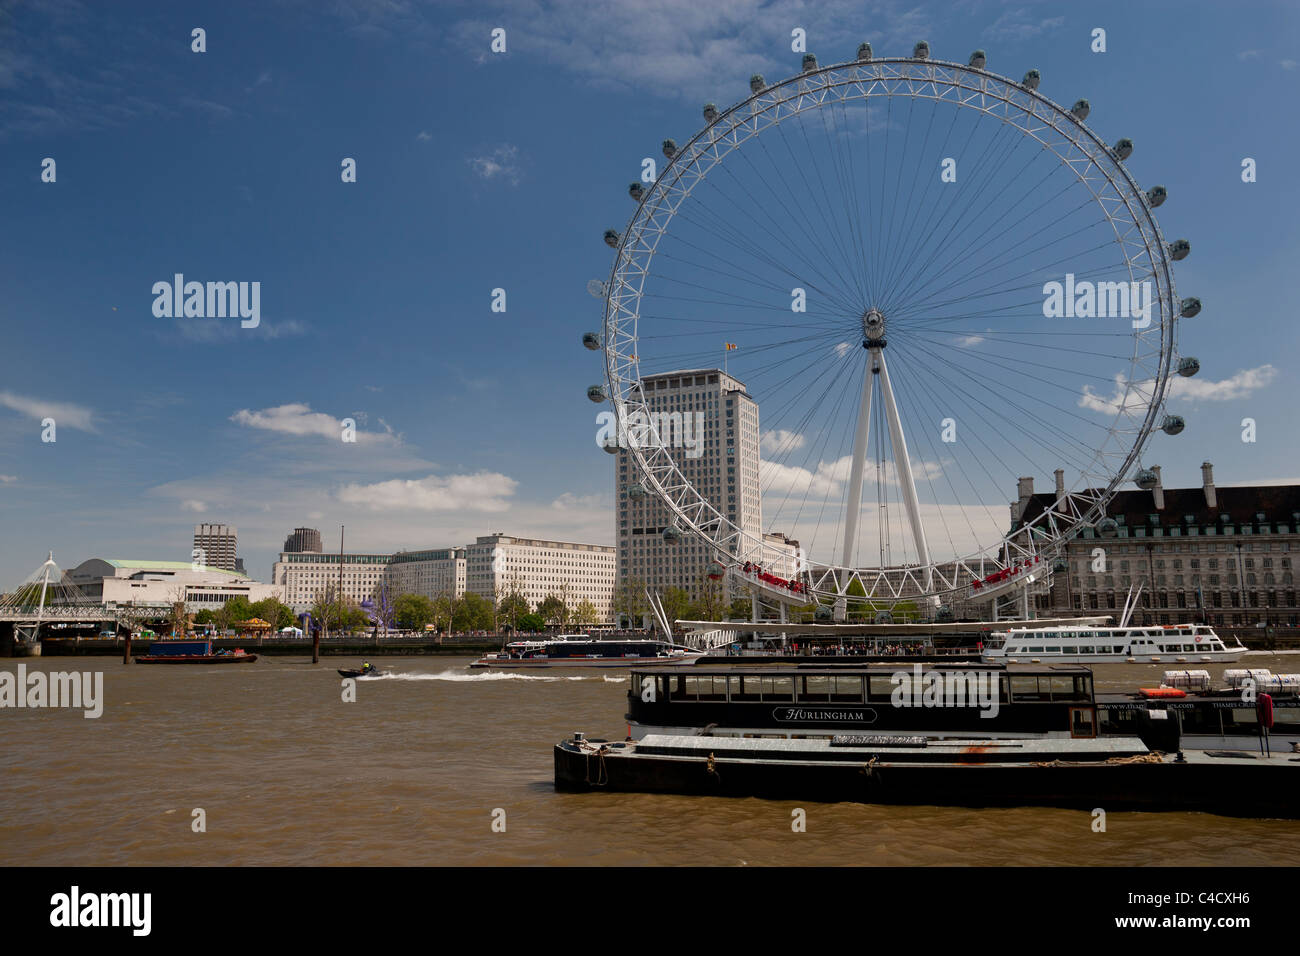 London Eye or Millennium wheel, London, UK Stock Photo